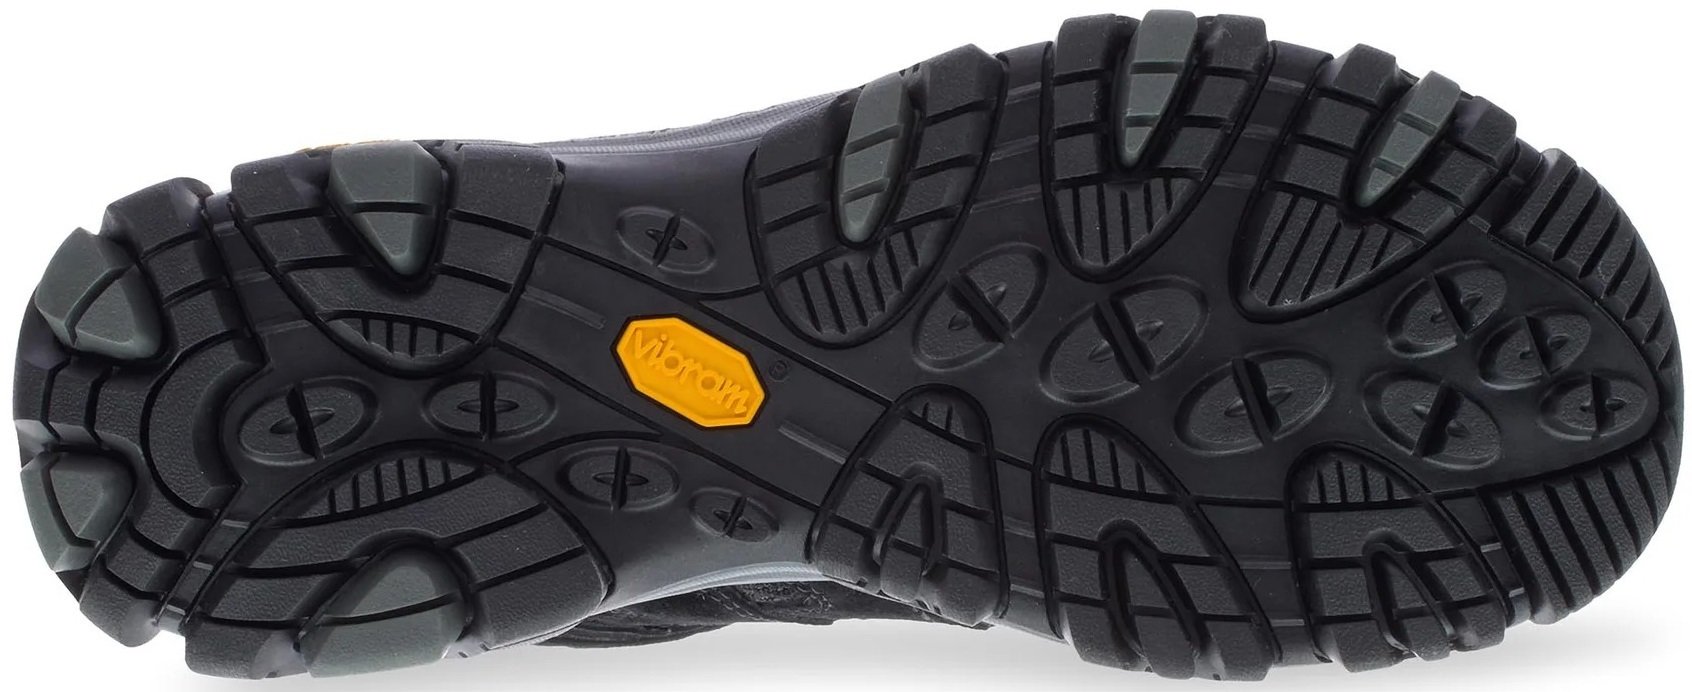 Ботинки мужские Merrell Moab 3 MID GTX black/grey 45 черный фото 4